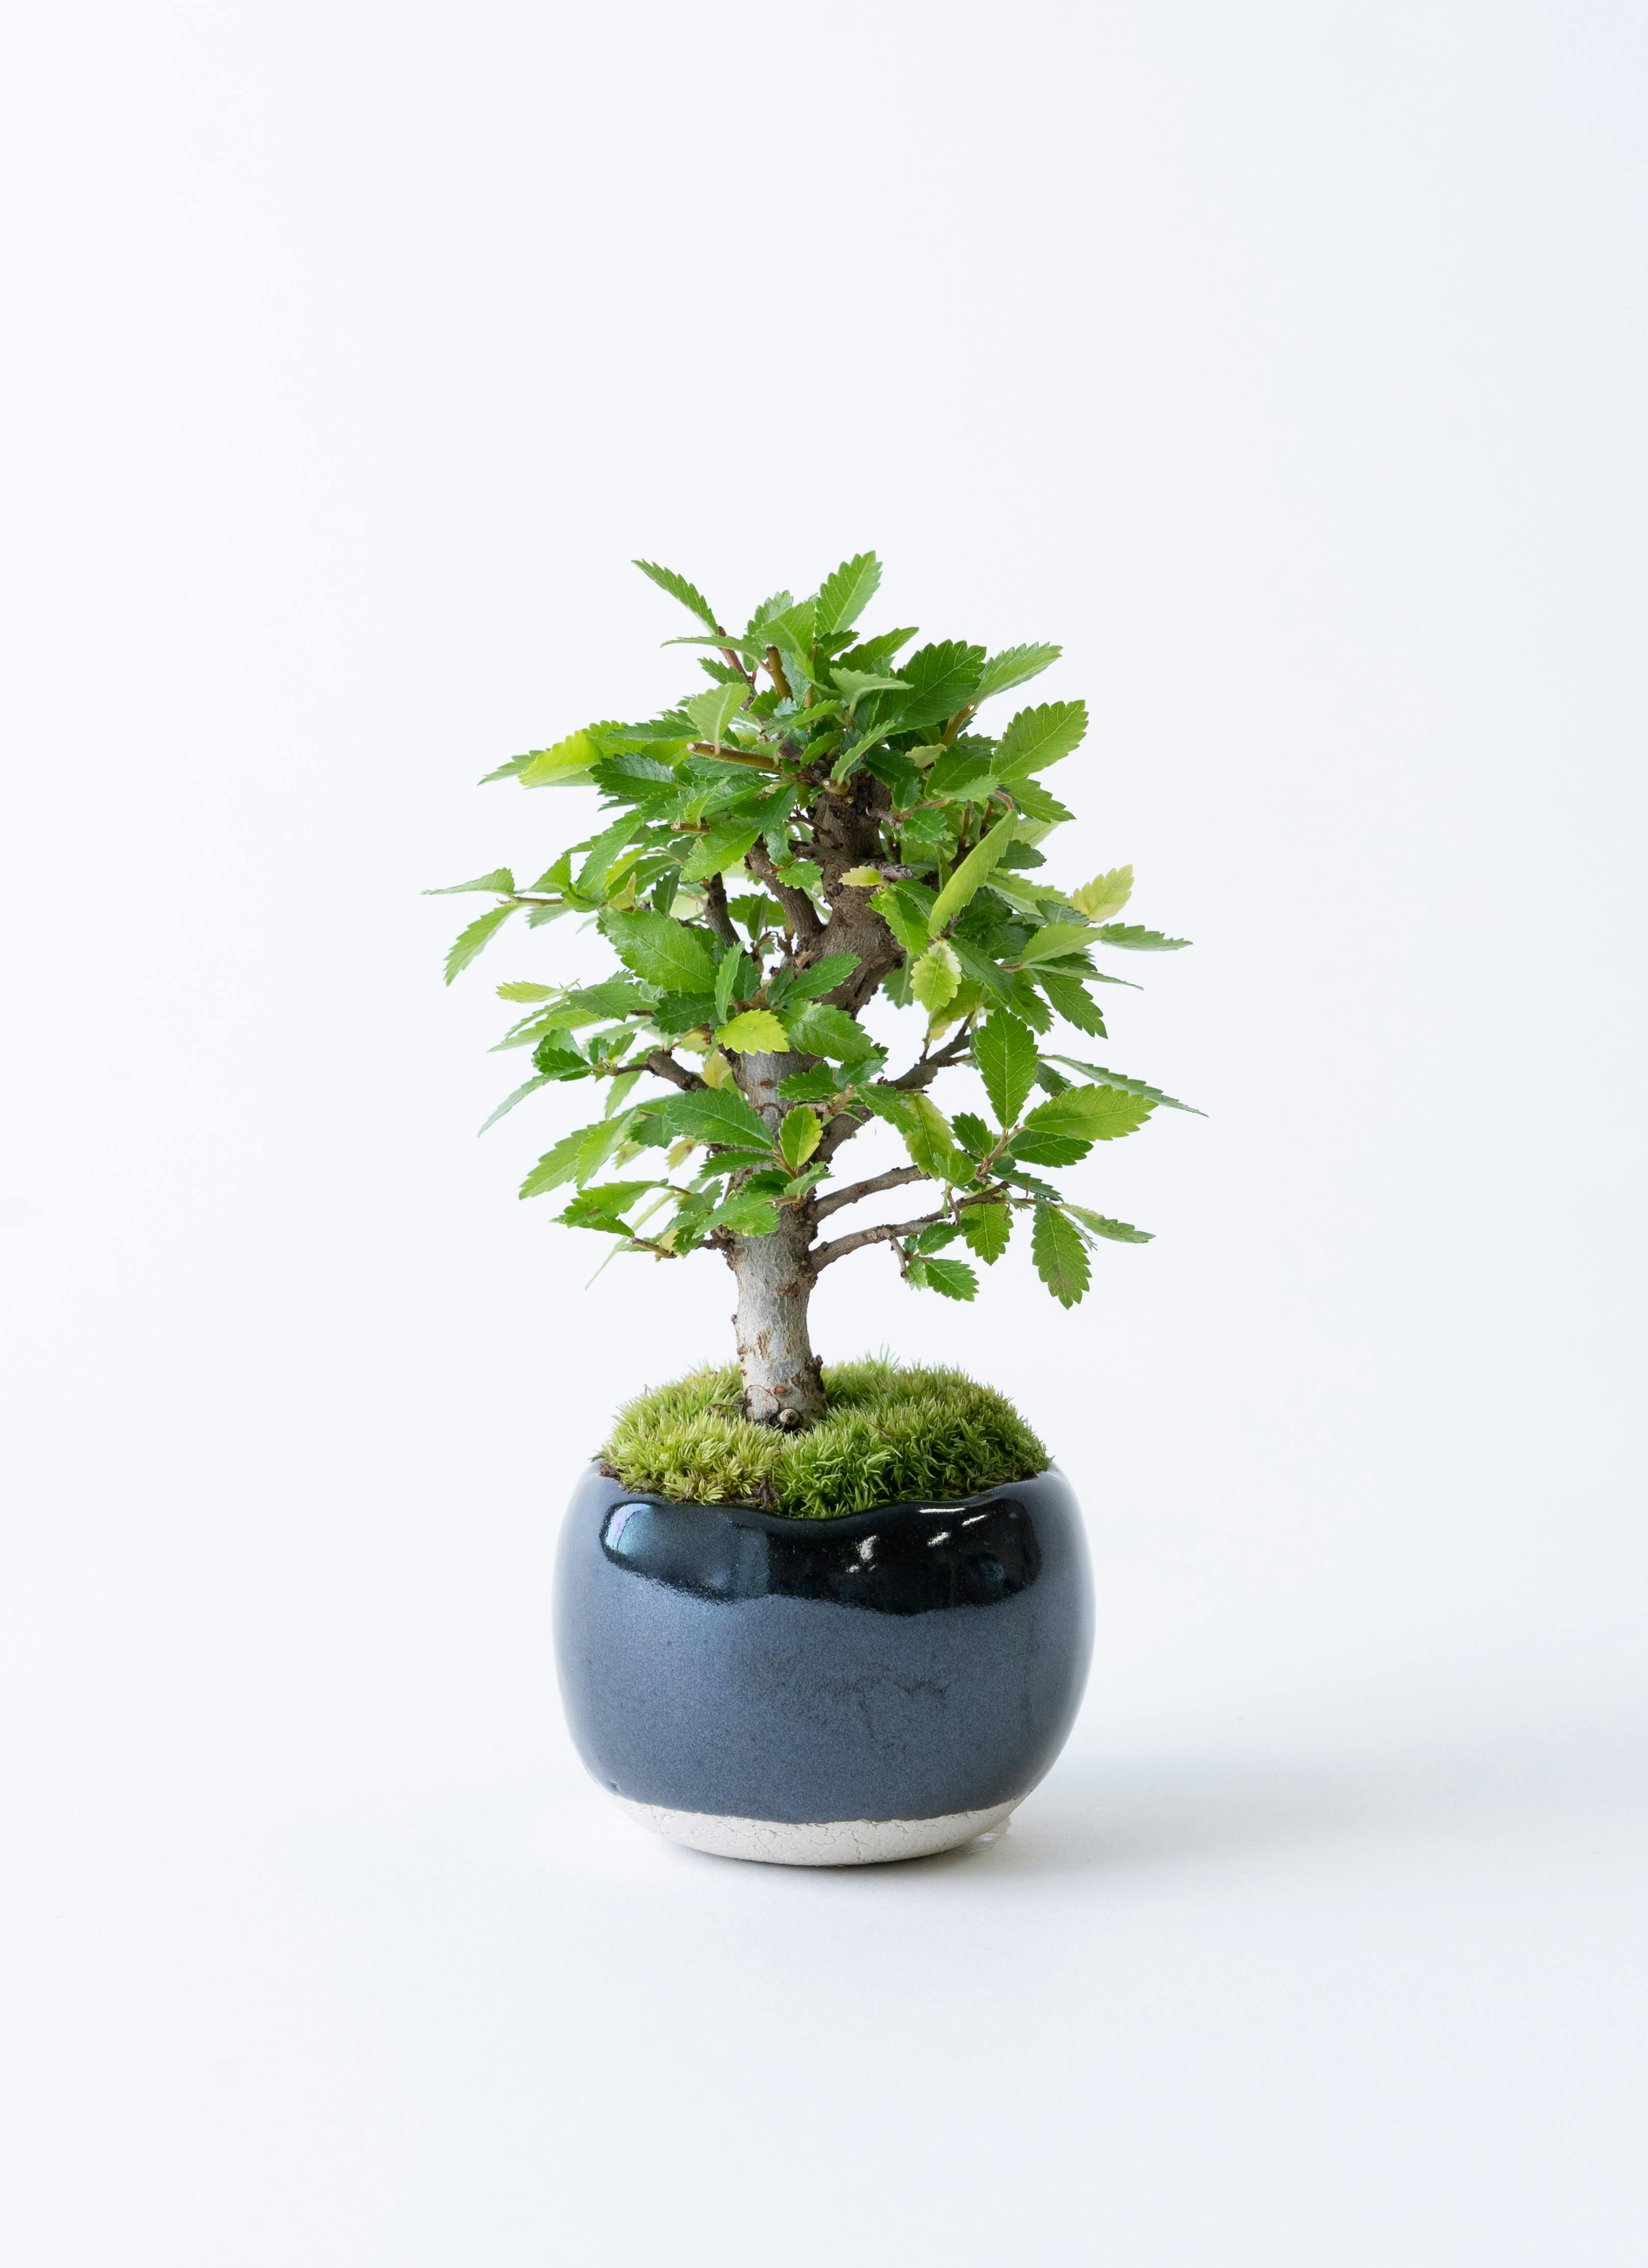 楡欅盆栽 ニレケヤキ にれけやき 盆栽 bonsai 送料無料 - 盆栽